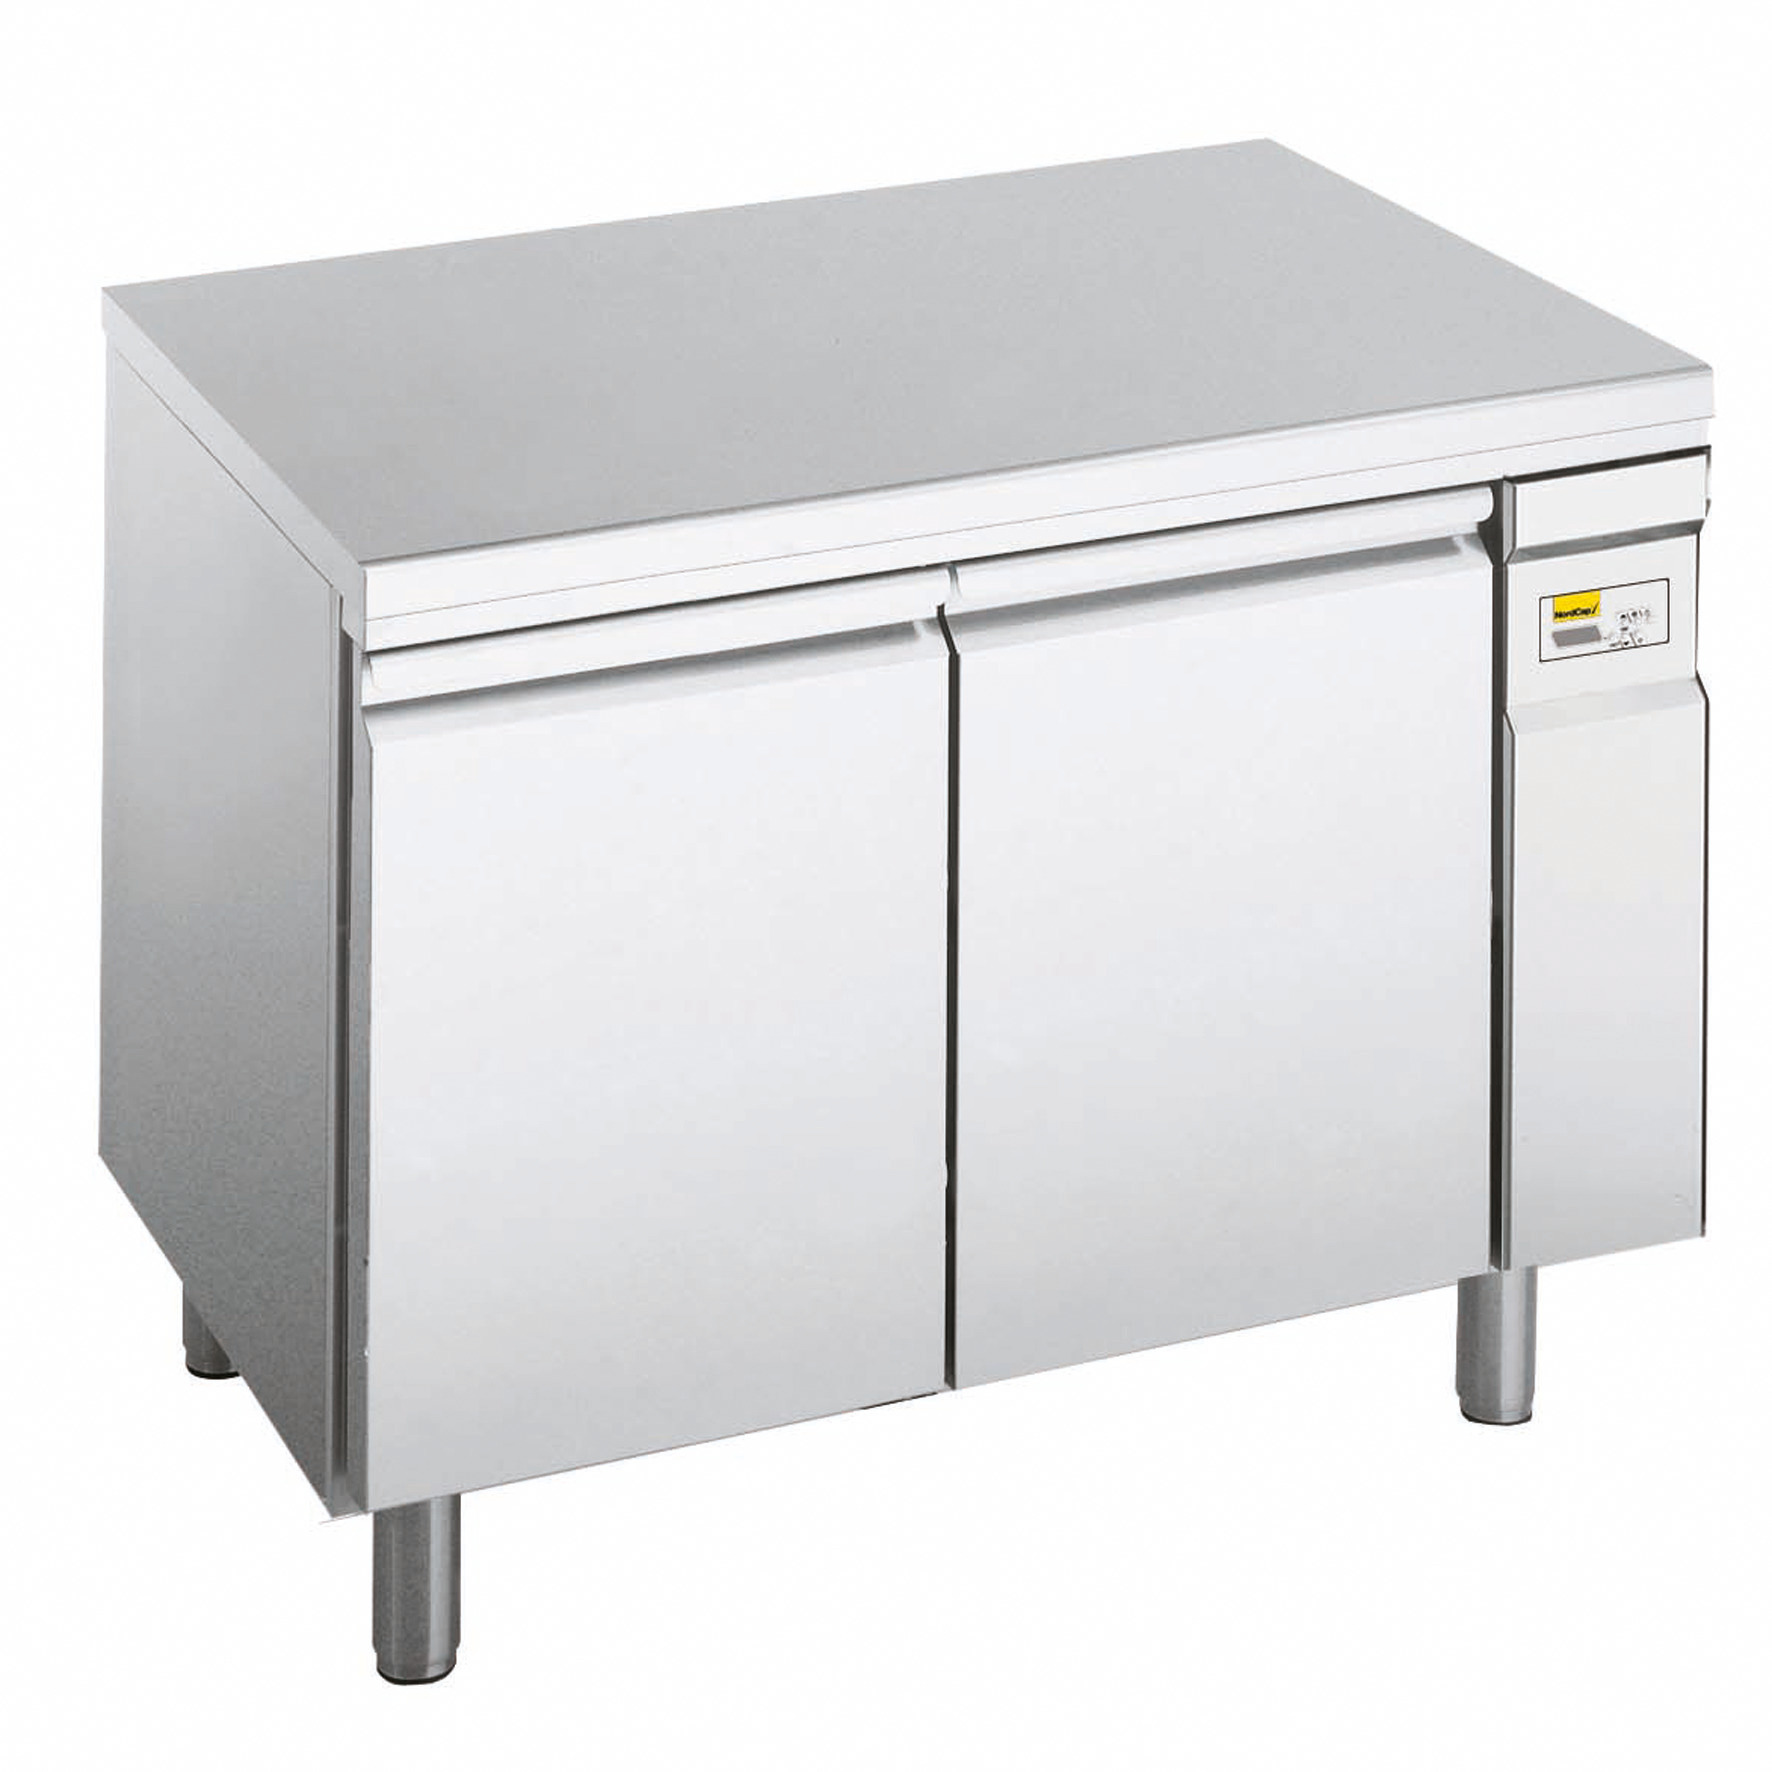 Backwarenkühltisch 408,00 l / 2 Türen für EN 600 x 400 mm / zentralgekühlt